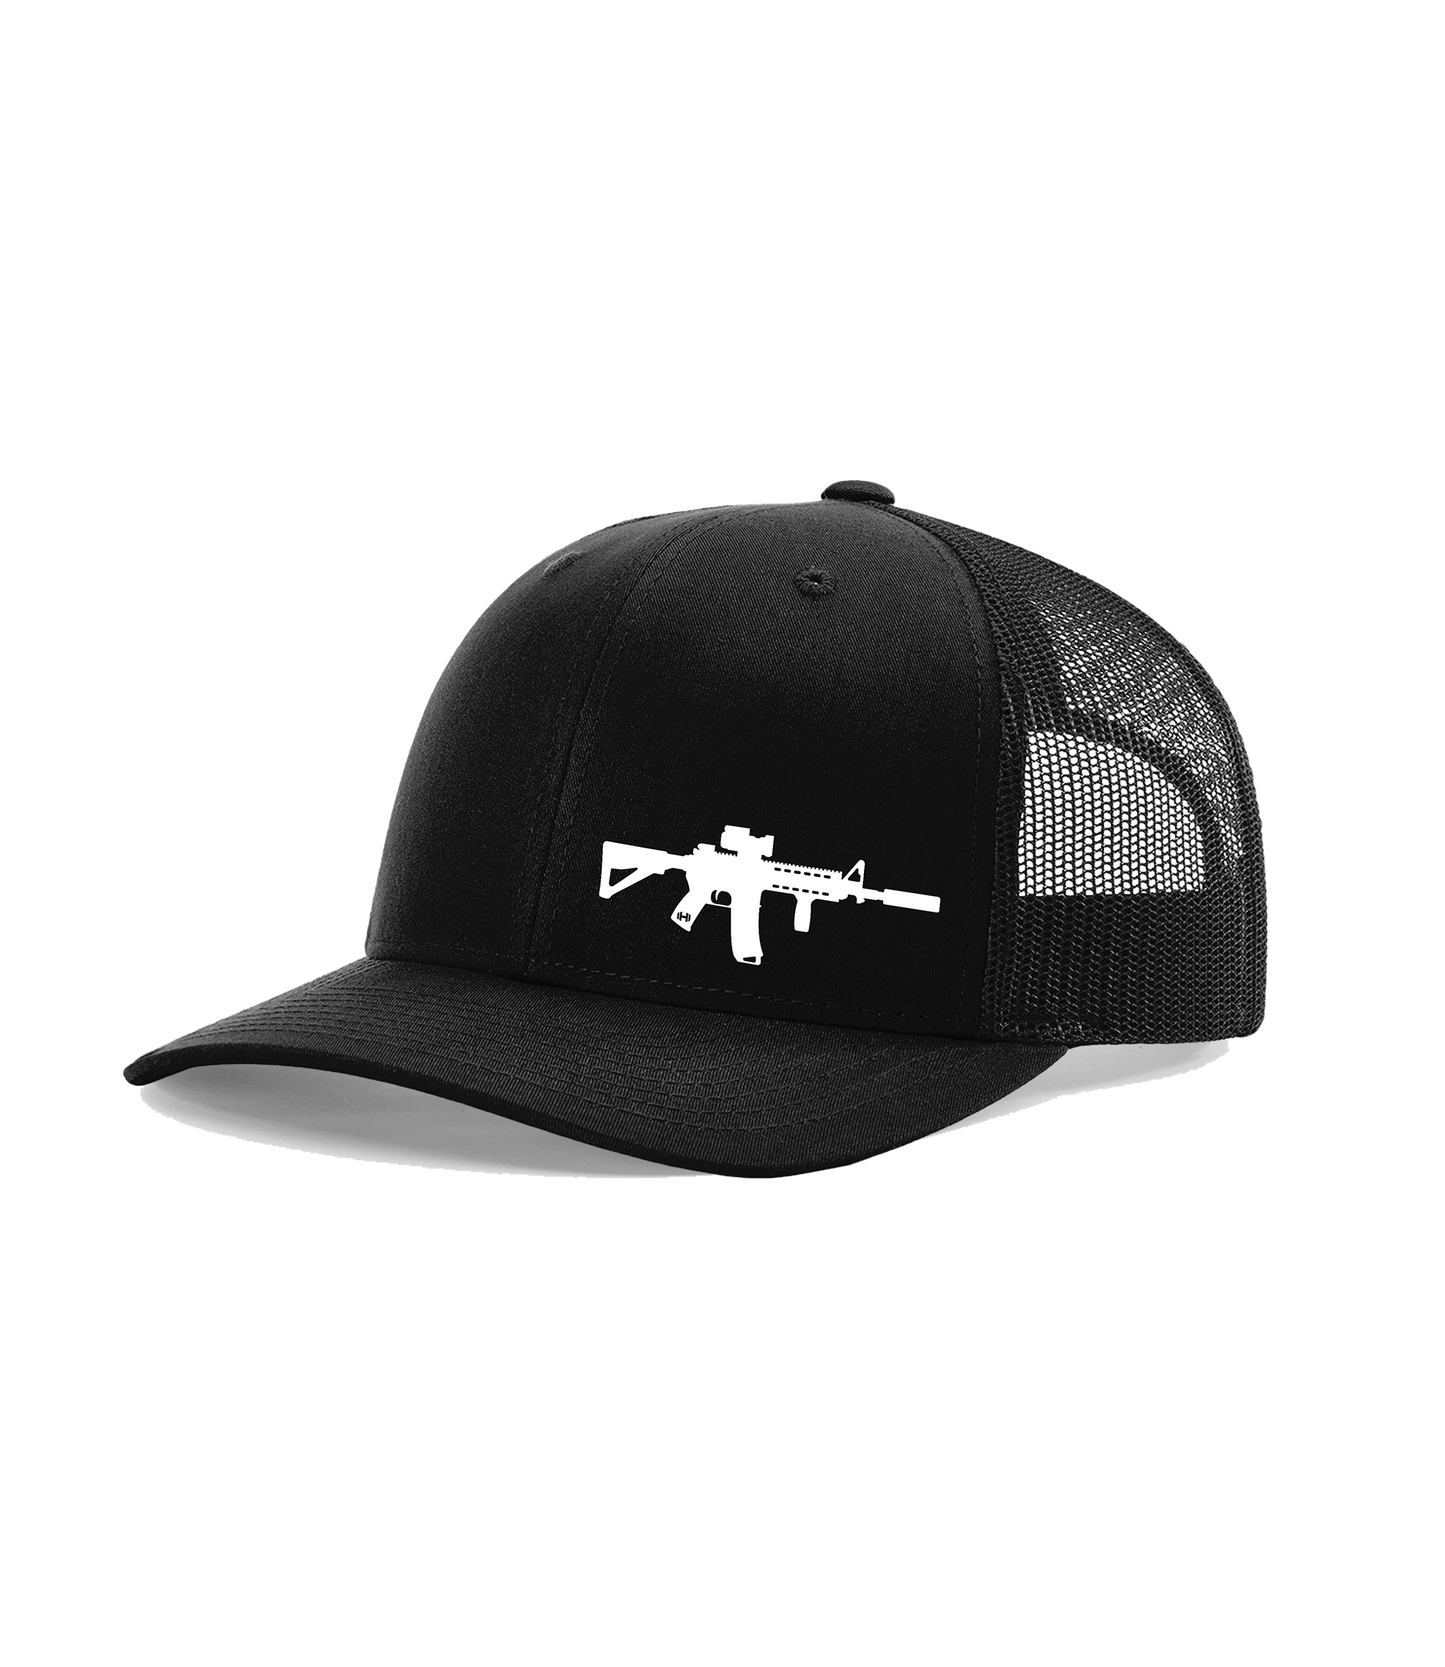 AR-15 Premium Hat